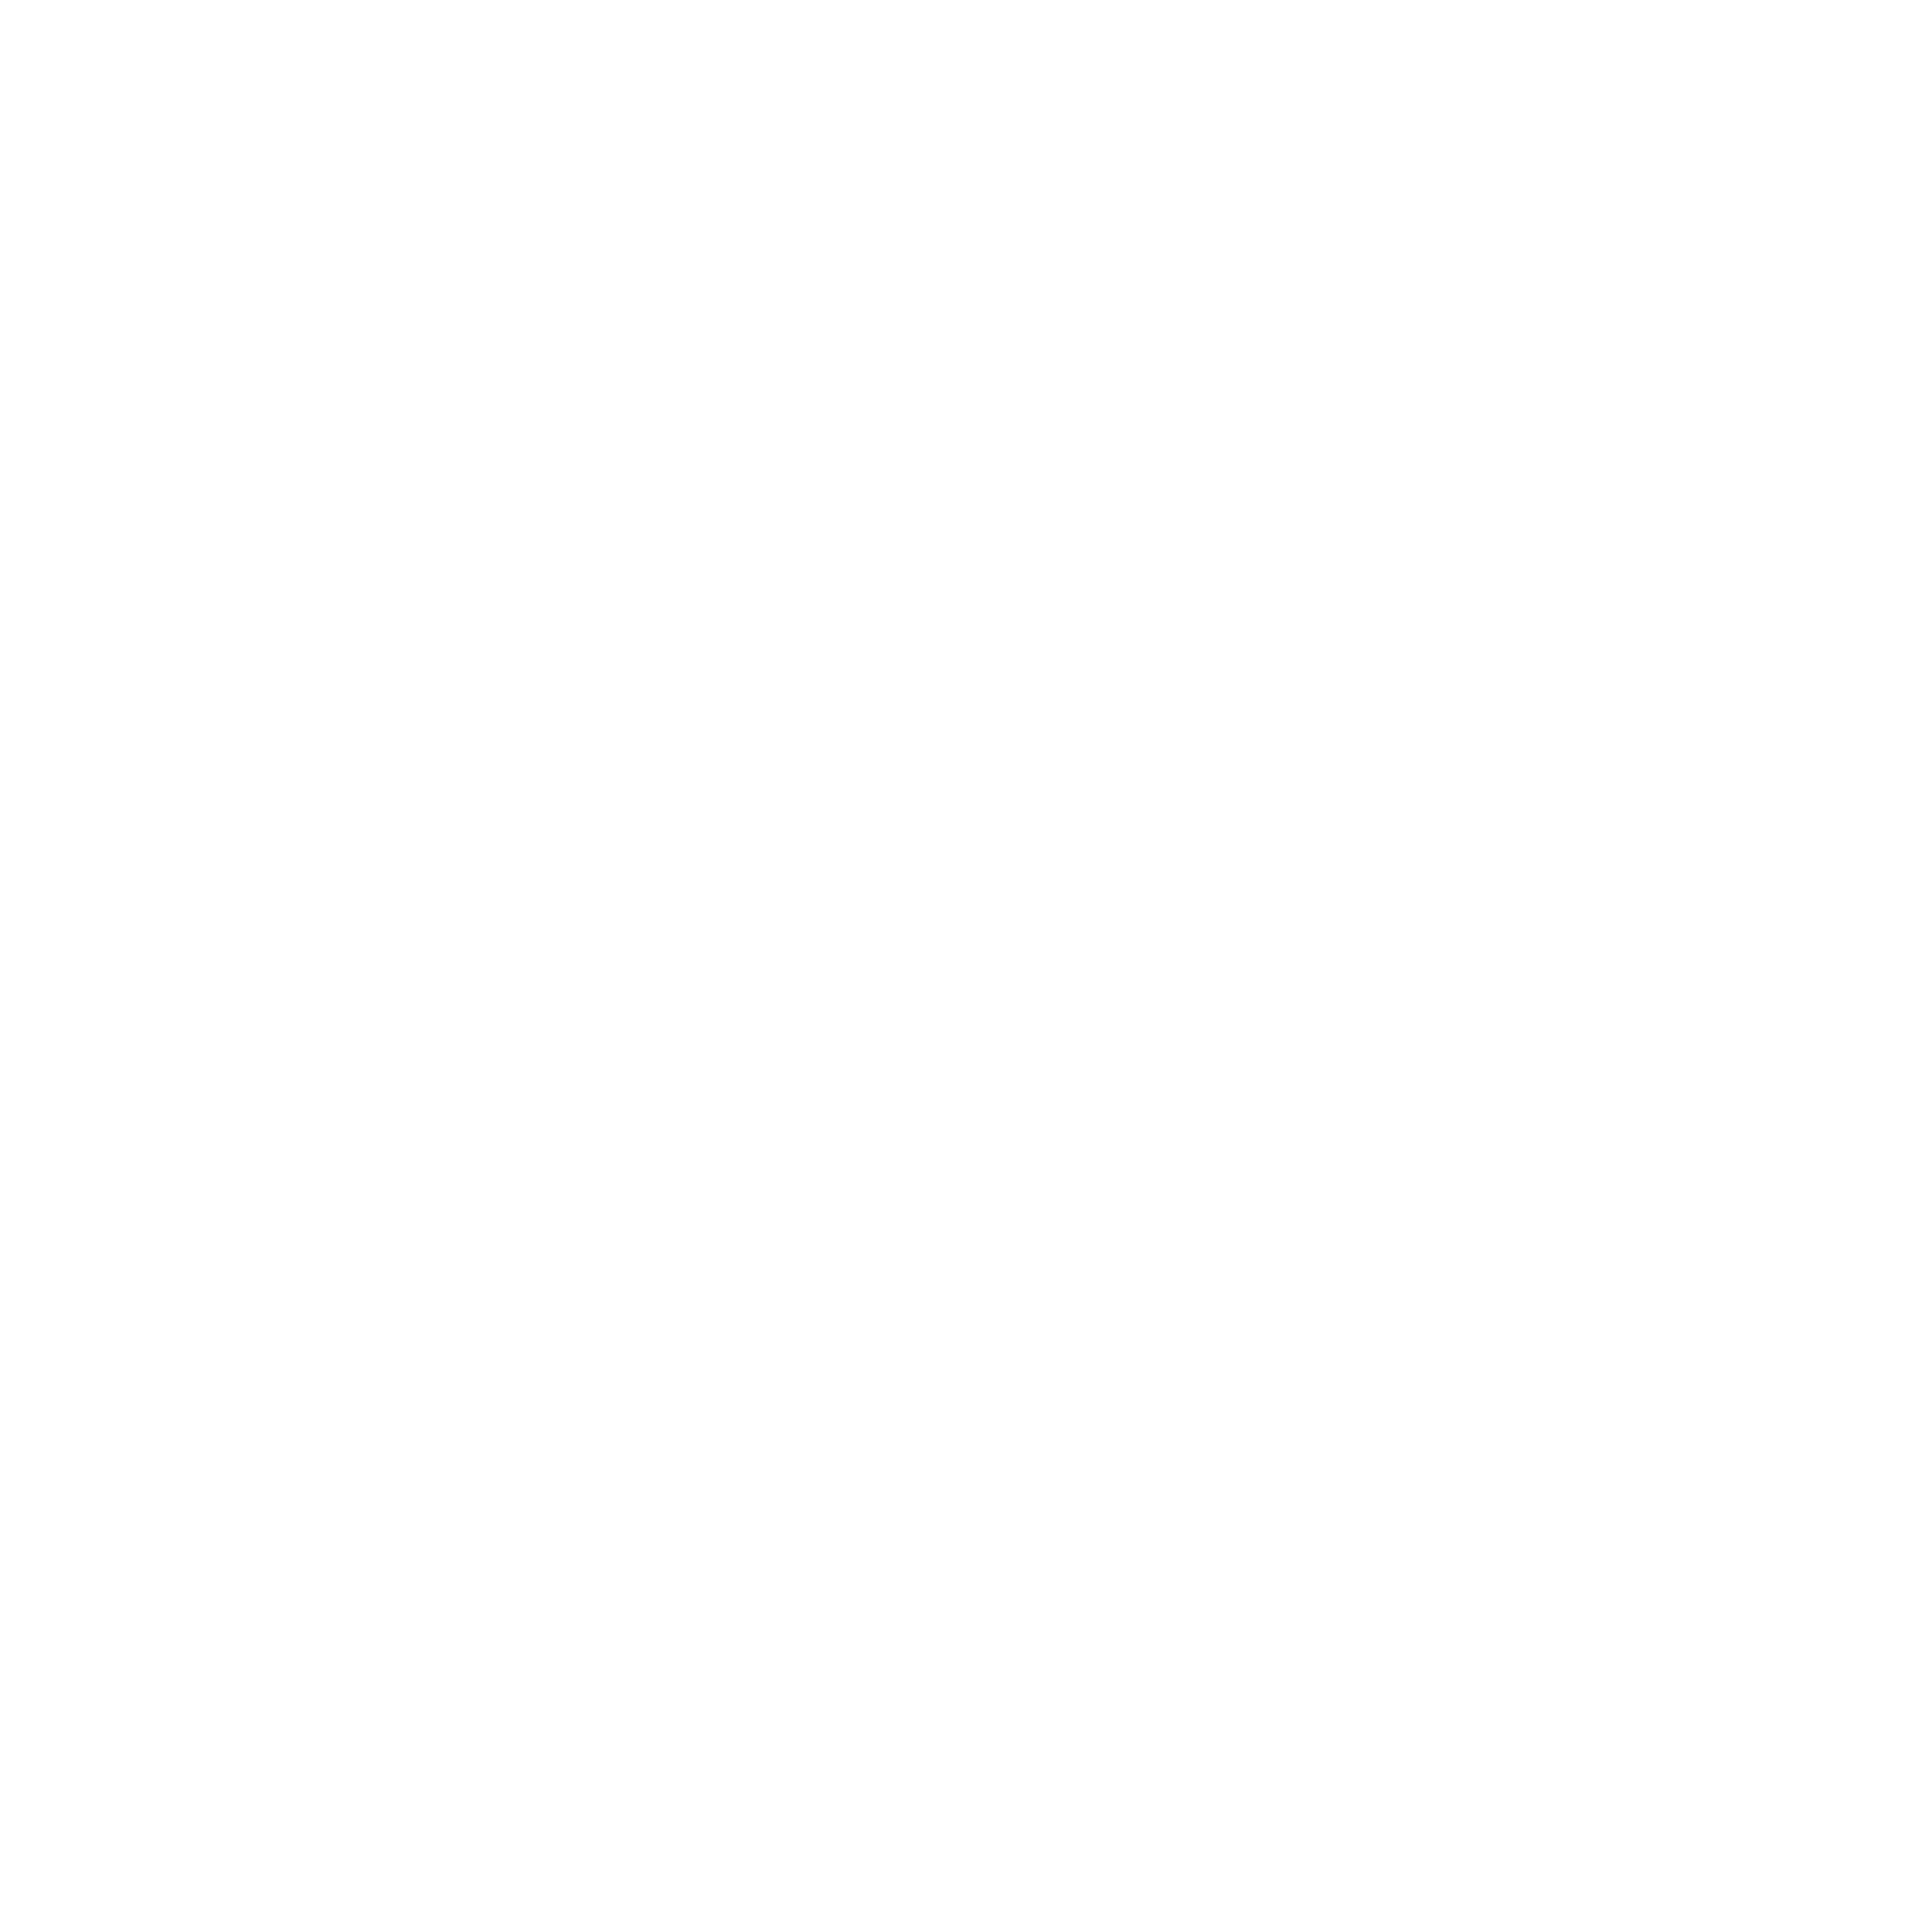 Kleintierzentrum AniCura Duisburg-Asterlagen logo